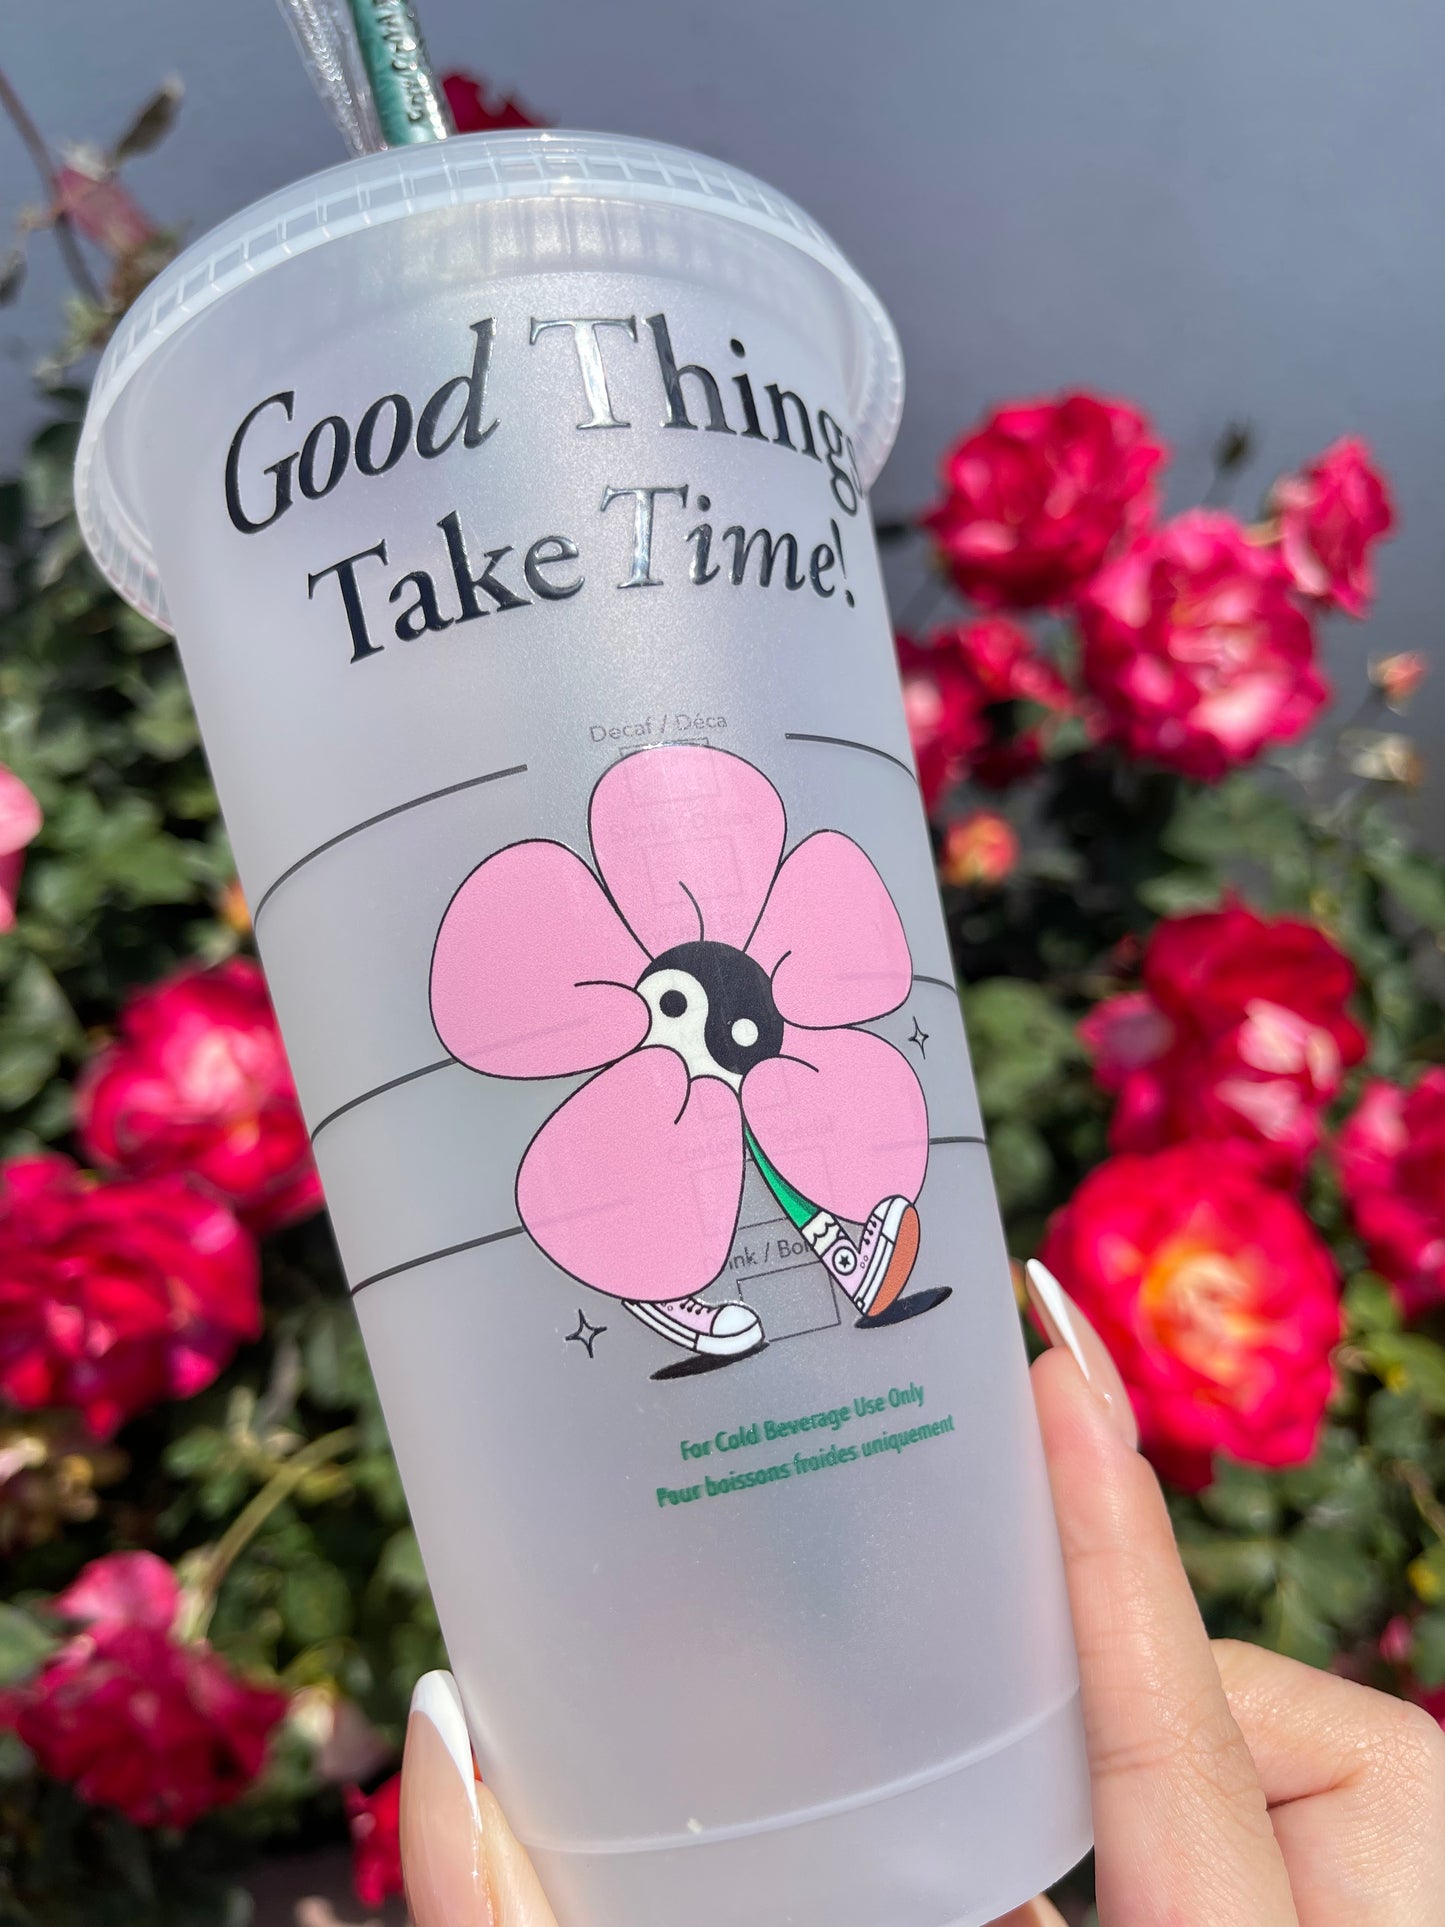 Good Things take time - pink flower